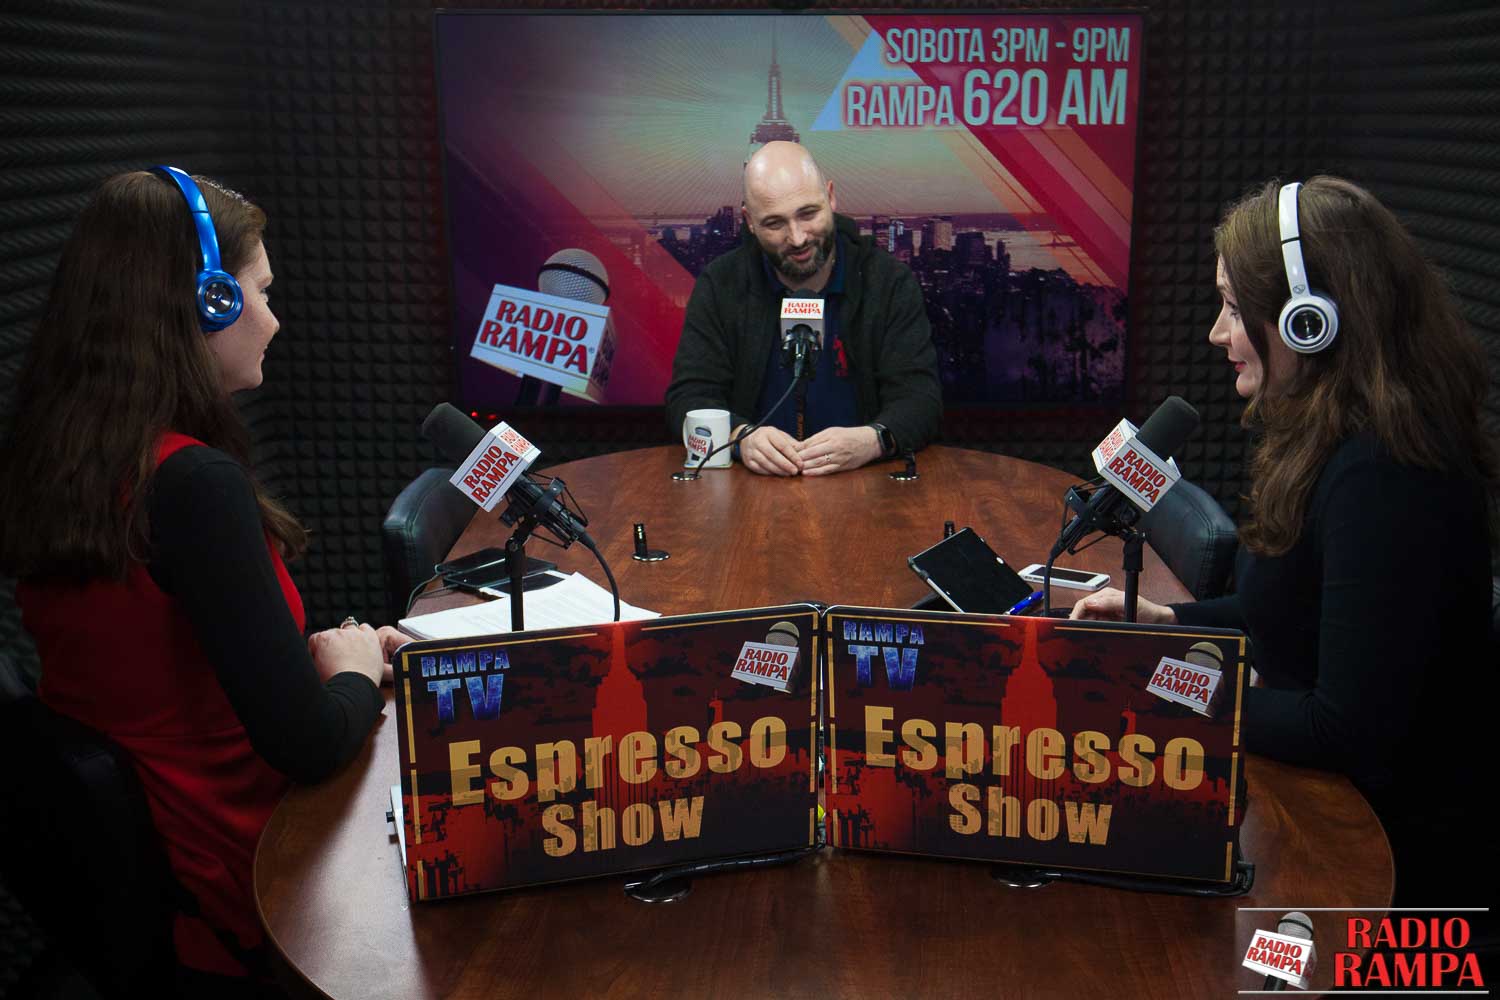 Espresso Show 3-30-18 Wielki Piątek; o tym dlaczego nie można bać się spowiedzi ks. Michał Olszewski; a także, astma – jak jej zapobiec?